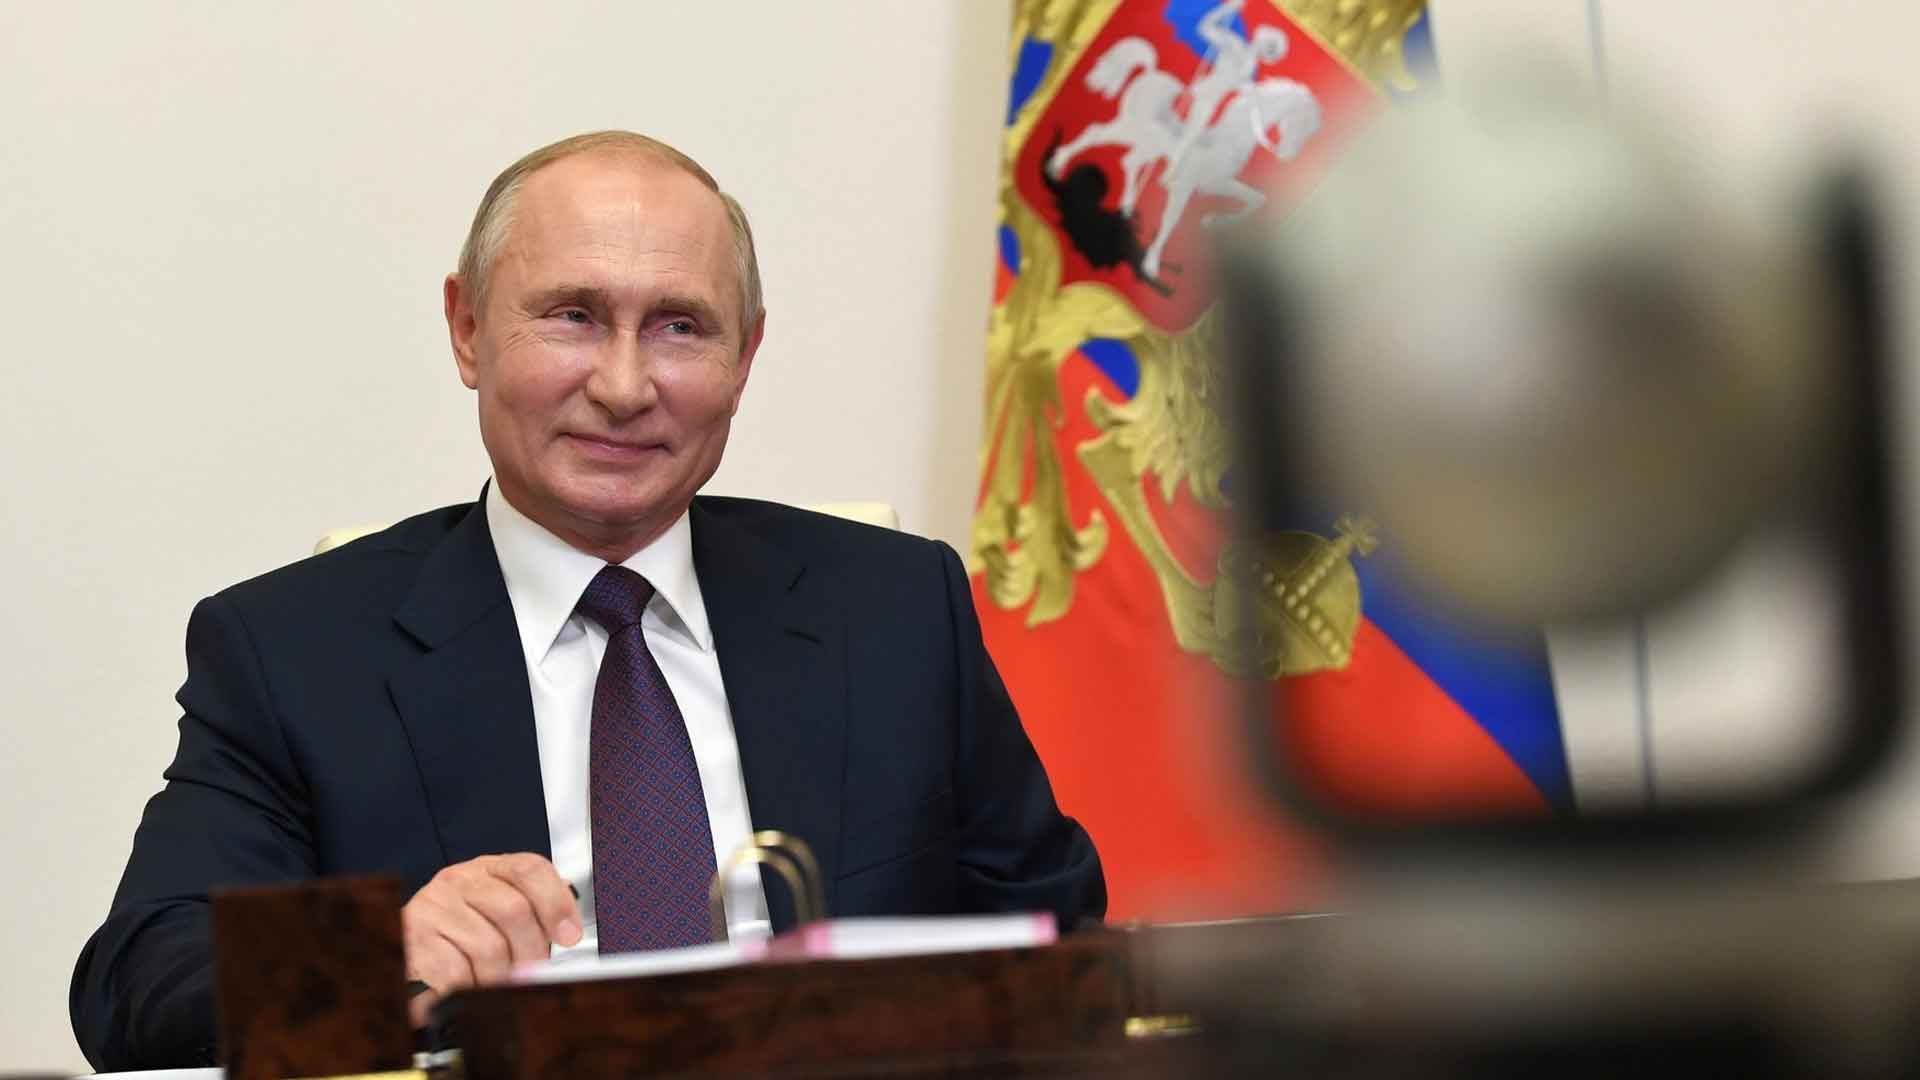 Президент ответит на вопросы по актуальным темам на телеканале «Россия 24» Фото: © GLOBAL LOOK press / Kremlin Pool